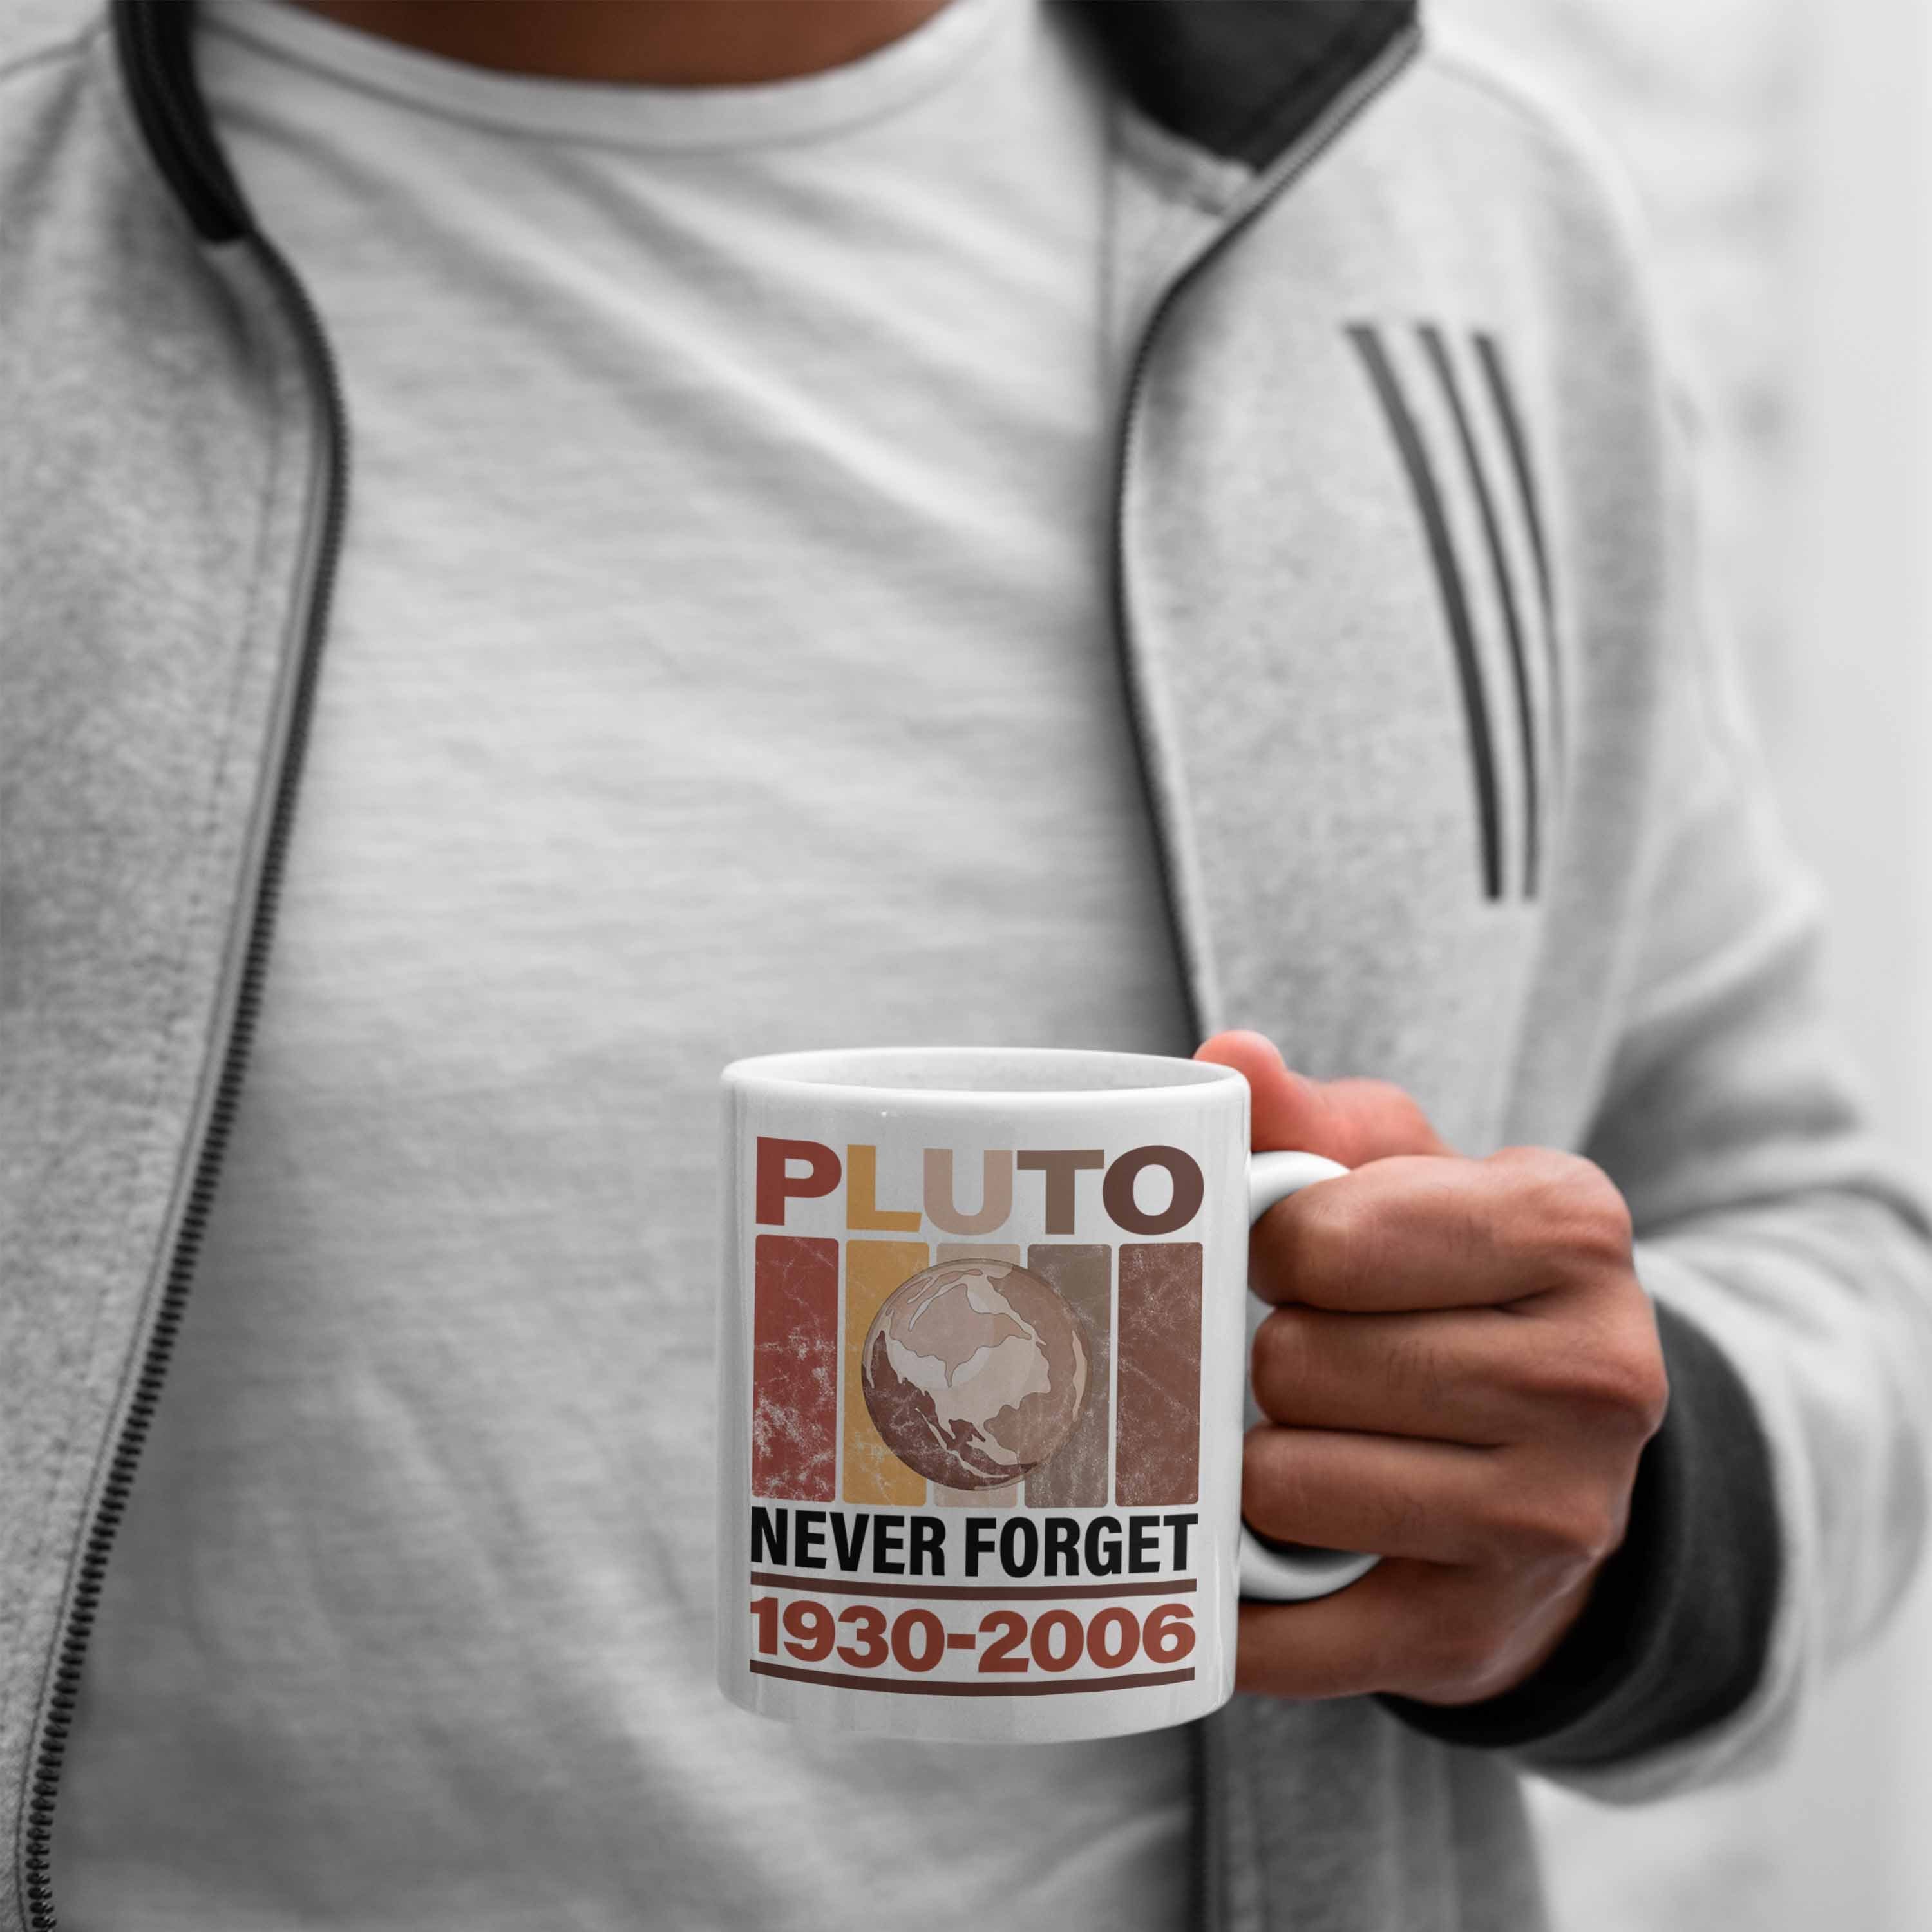 Trendation Tasse Lustige Tasse "Pluto Geschenk Forget" Never Weiss Astronomie-Fans